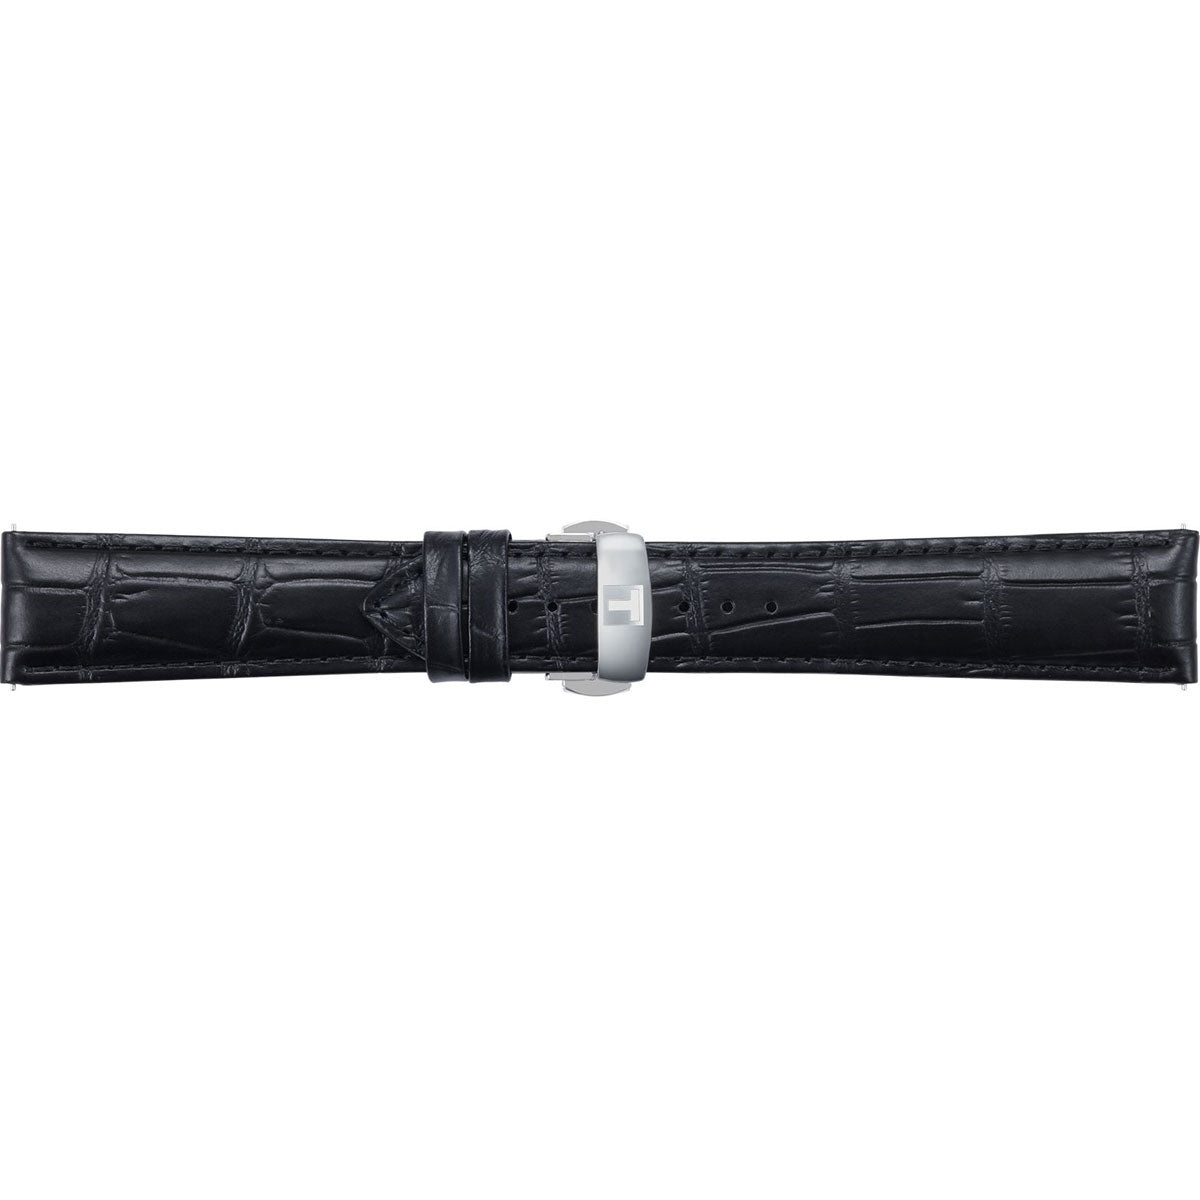 【36回分割手数料無料！】ティソ TISSOT 腕時計 メンズ アーバンシースター 日本限定特別パッケージ Tissot Seastar Pack オートマティック 自動巻き T120.407.17.051.00